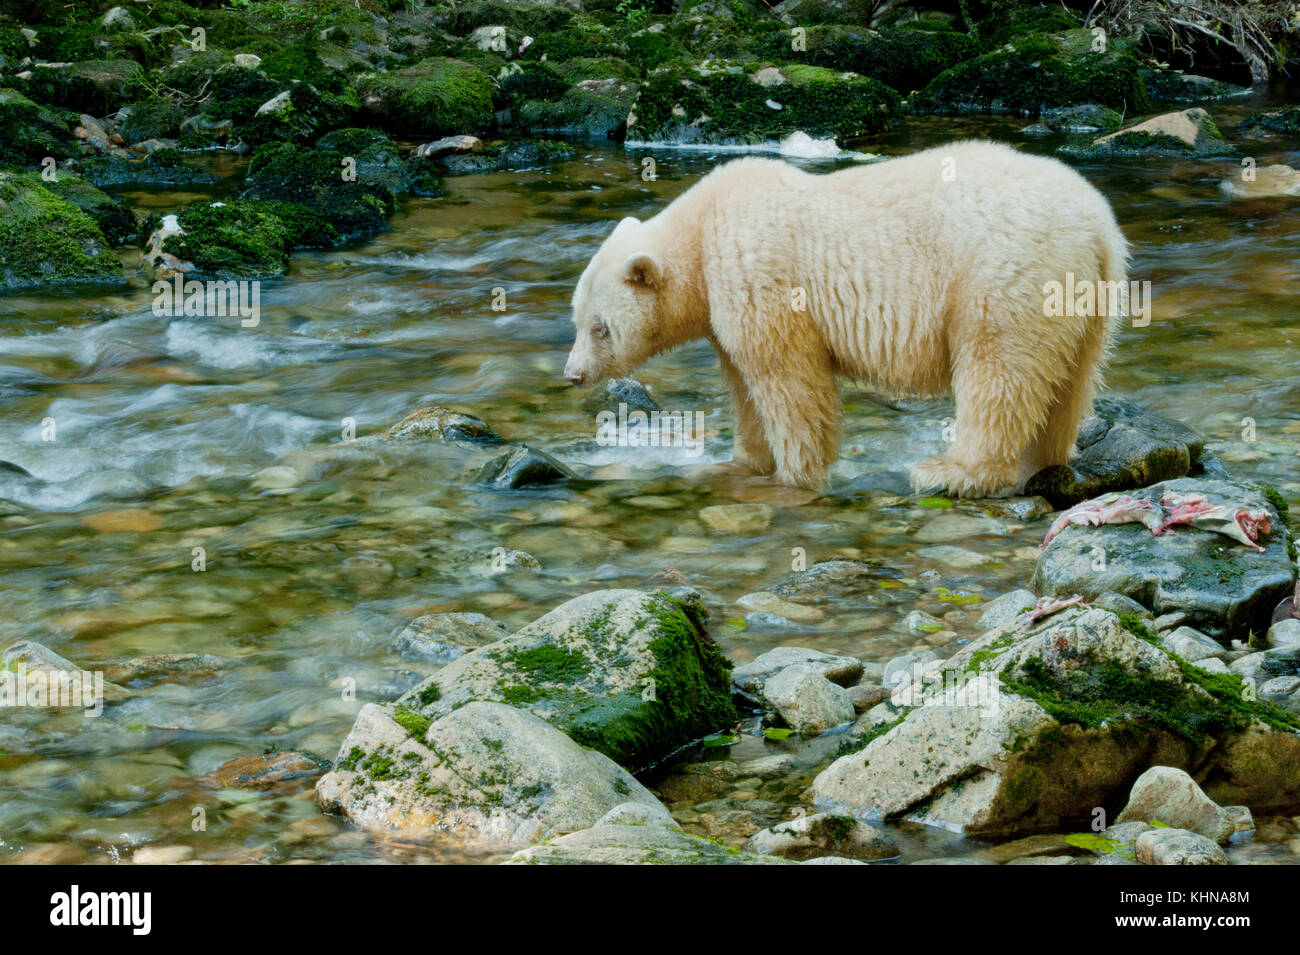 Kermode ou 'esprit' (Ursus americanus) kermodei, blanc sous forme d'ours noir, la forêt pluviale de Great Bear, bc canada Banque D'Images